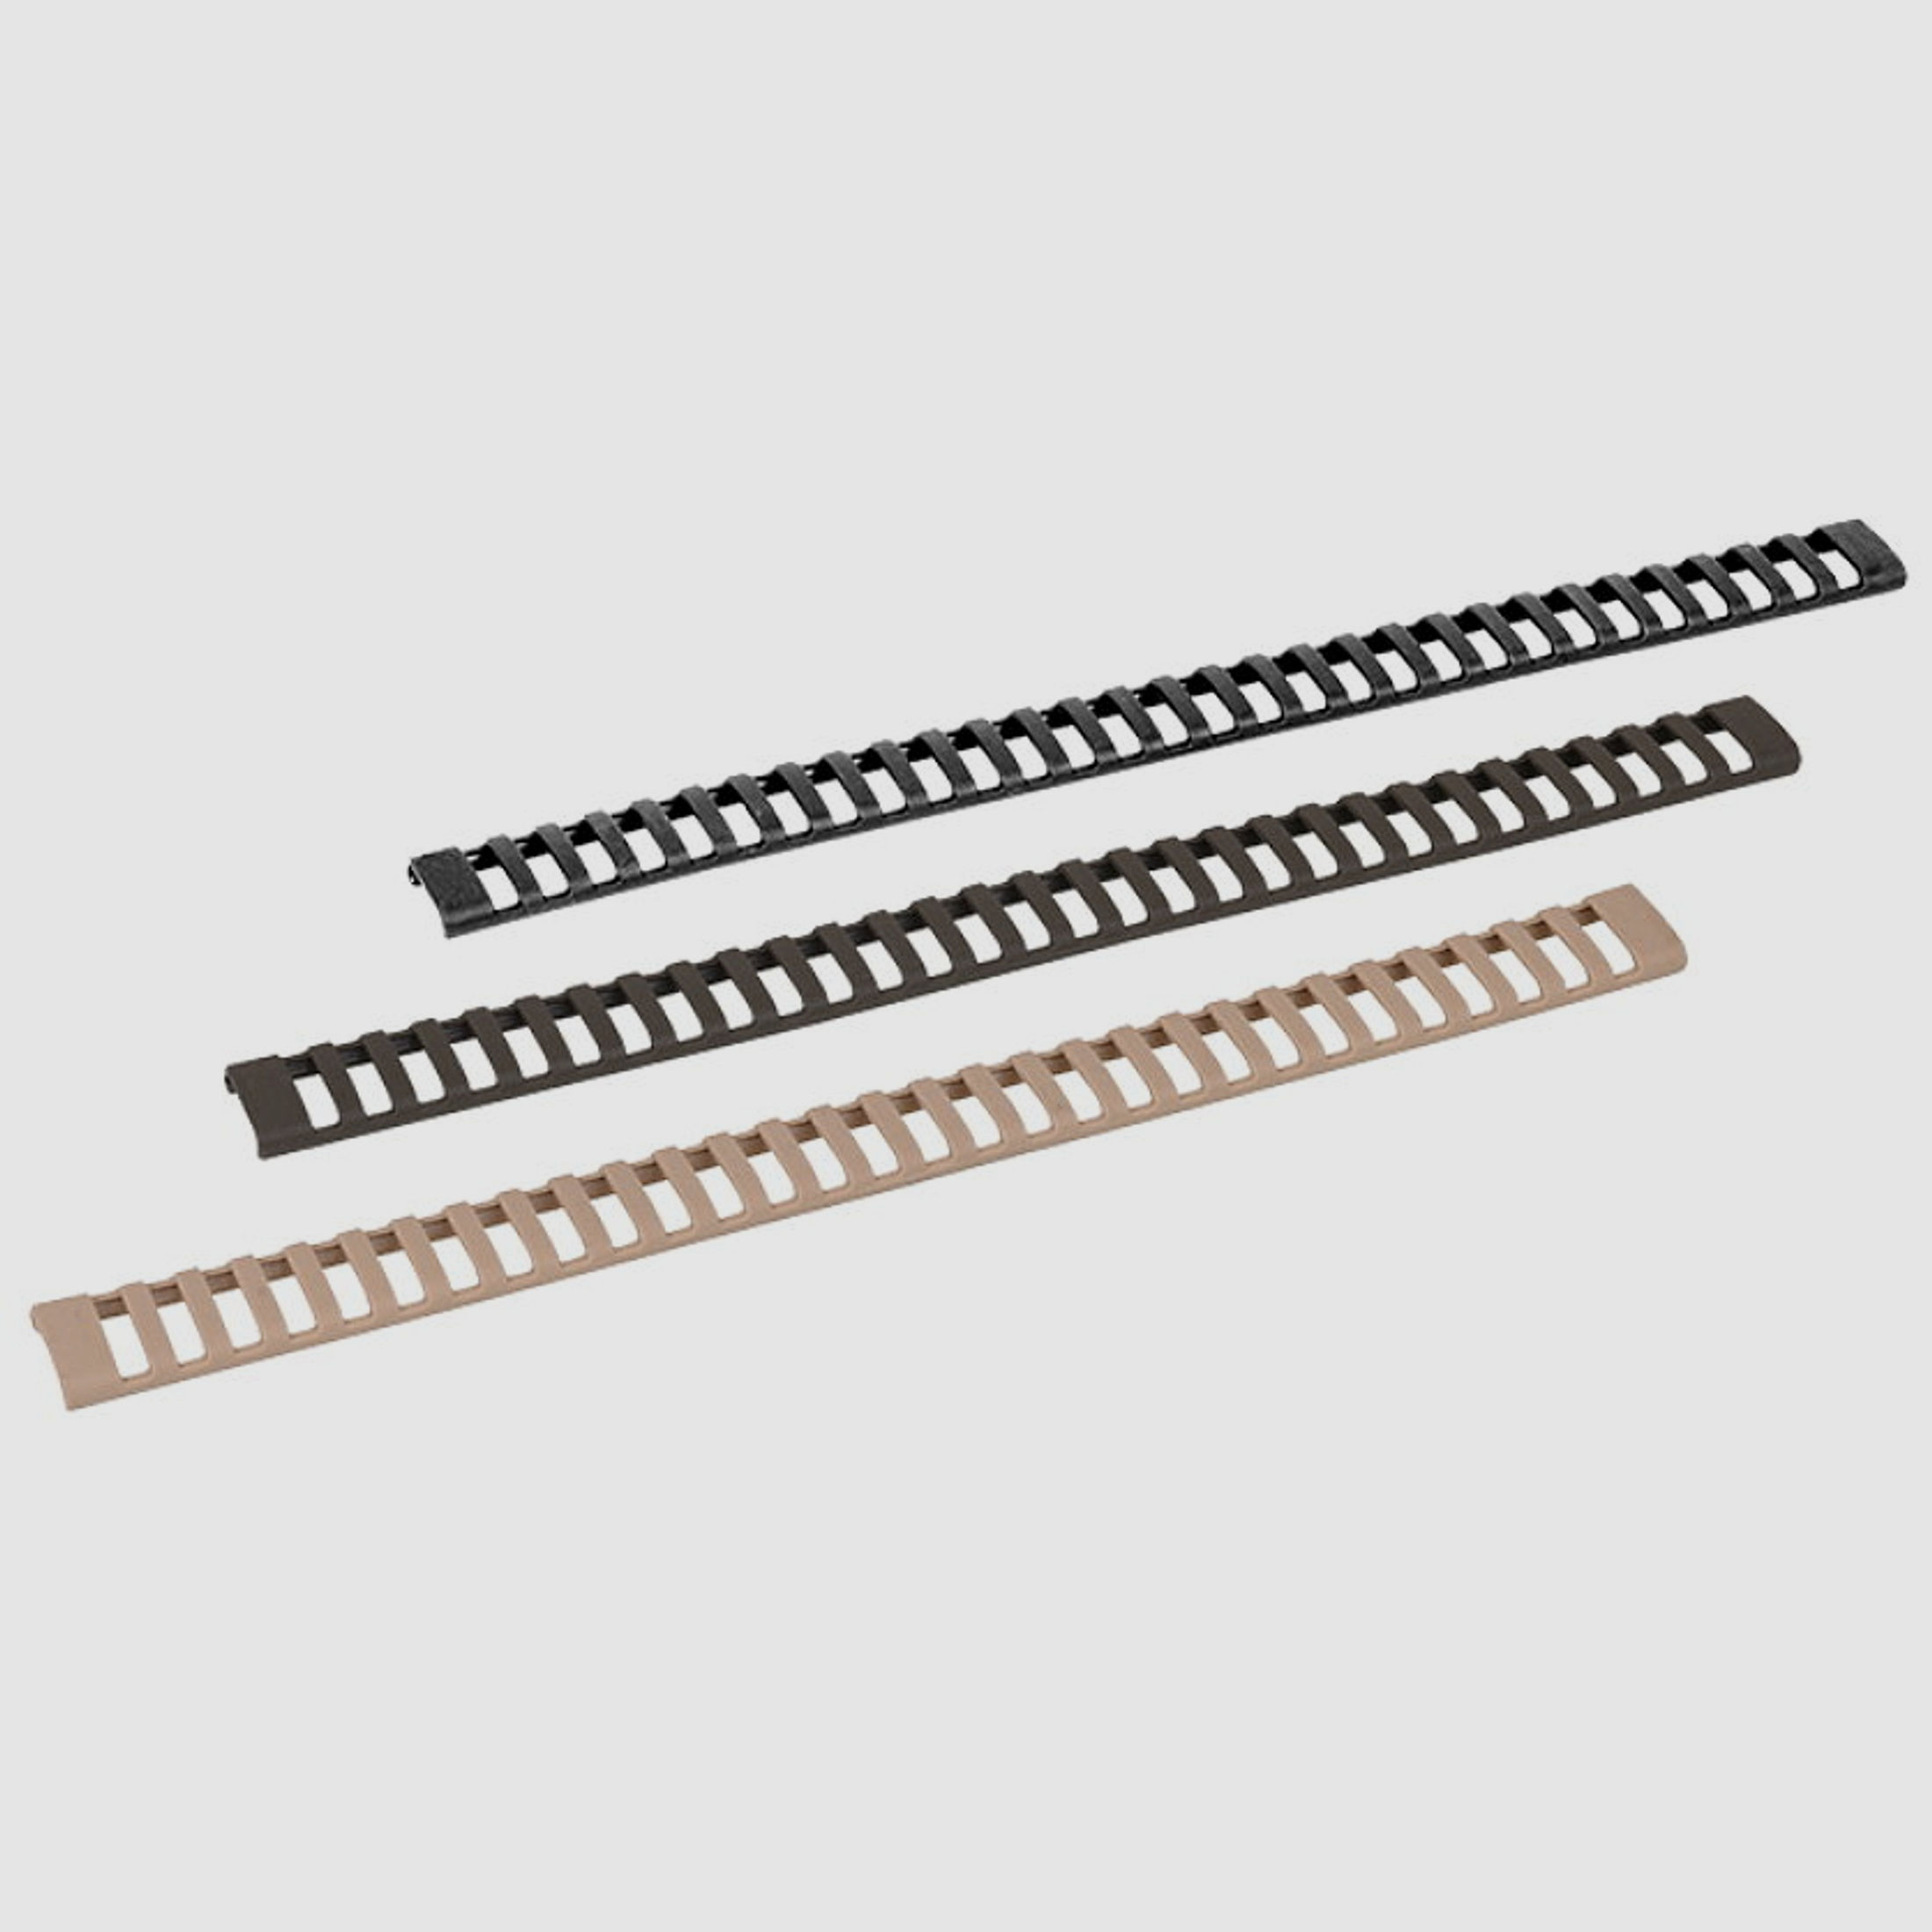 GERMANTAC Ladder Rail Cover 3er Set TAN für Picatinny Schienen